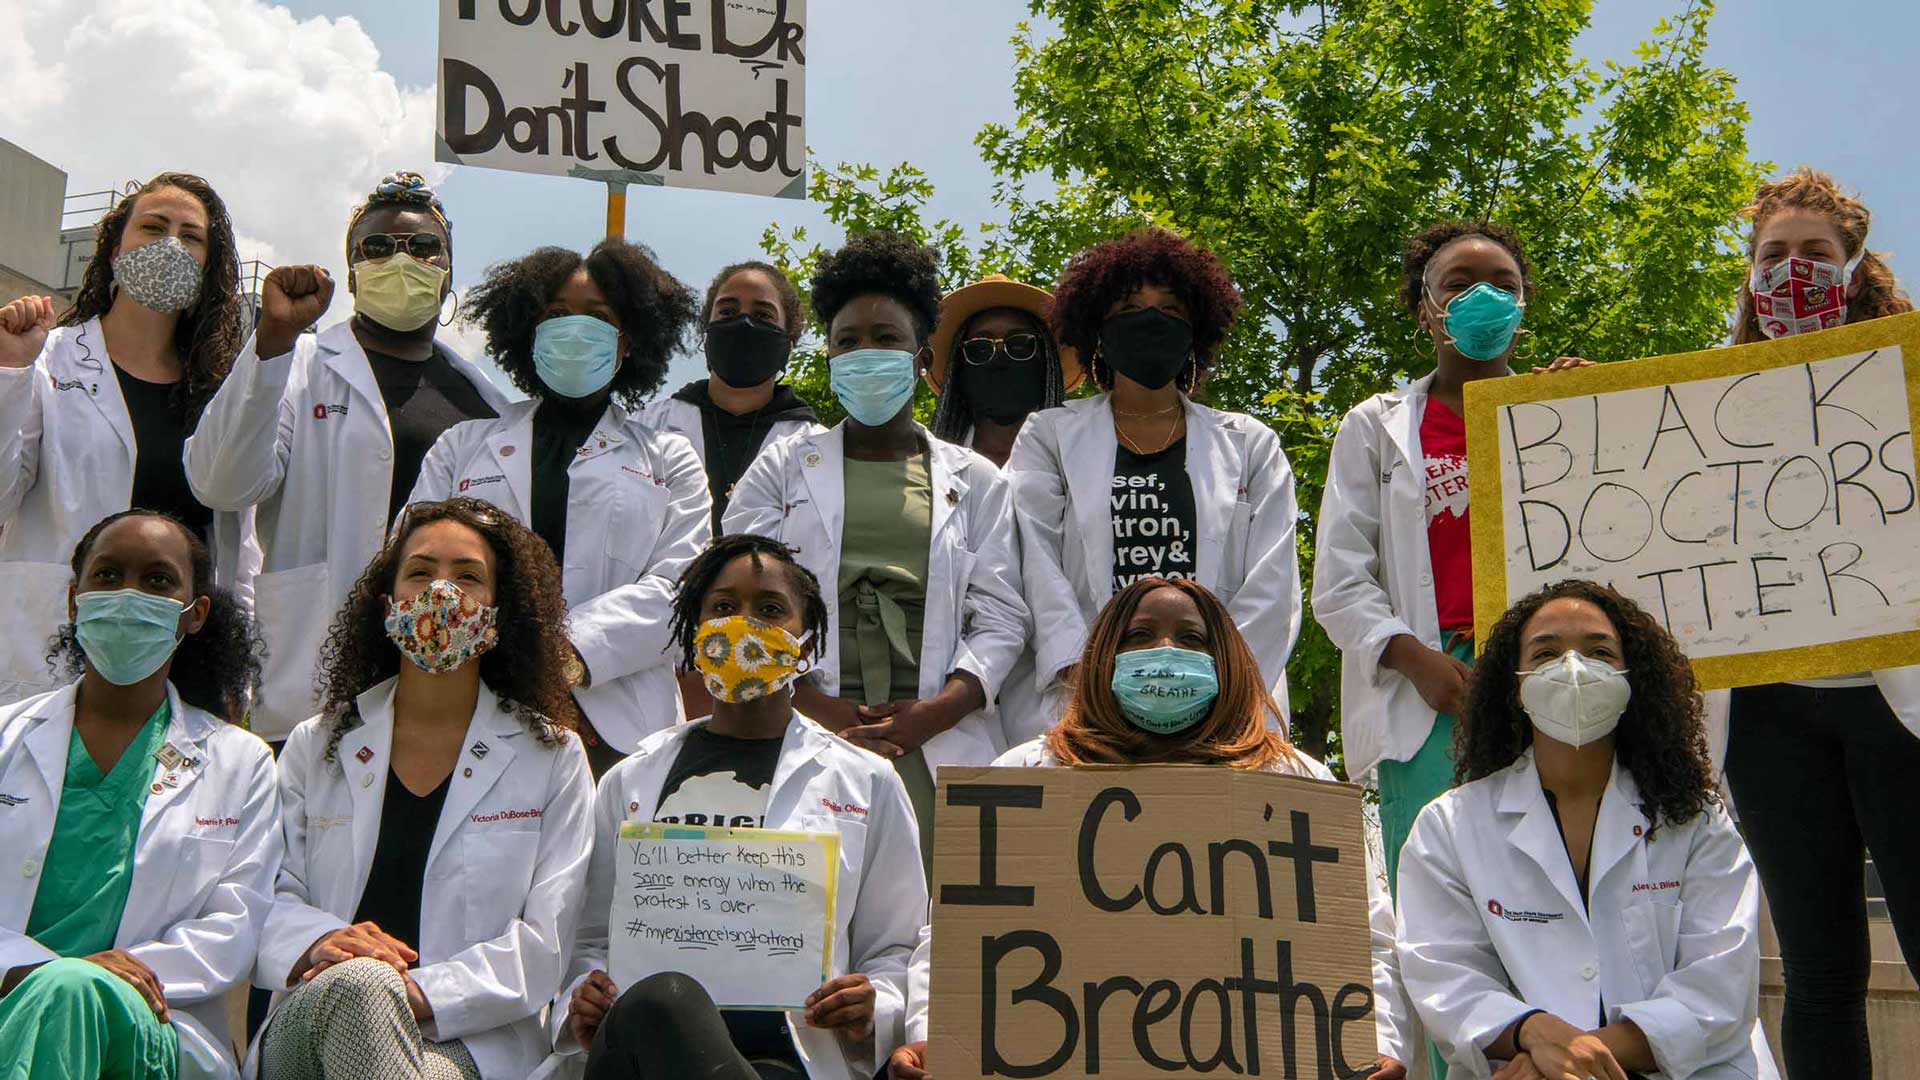 Group shot of doctors holding Black Lives Matter signs